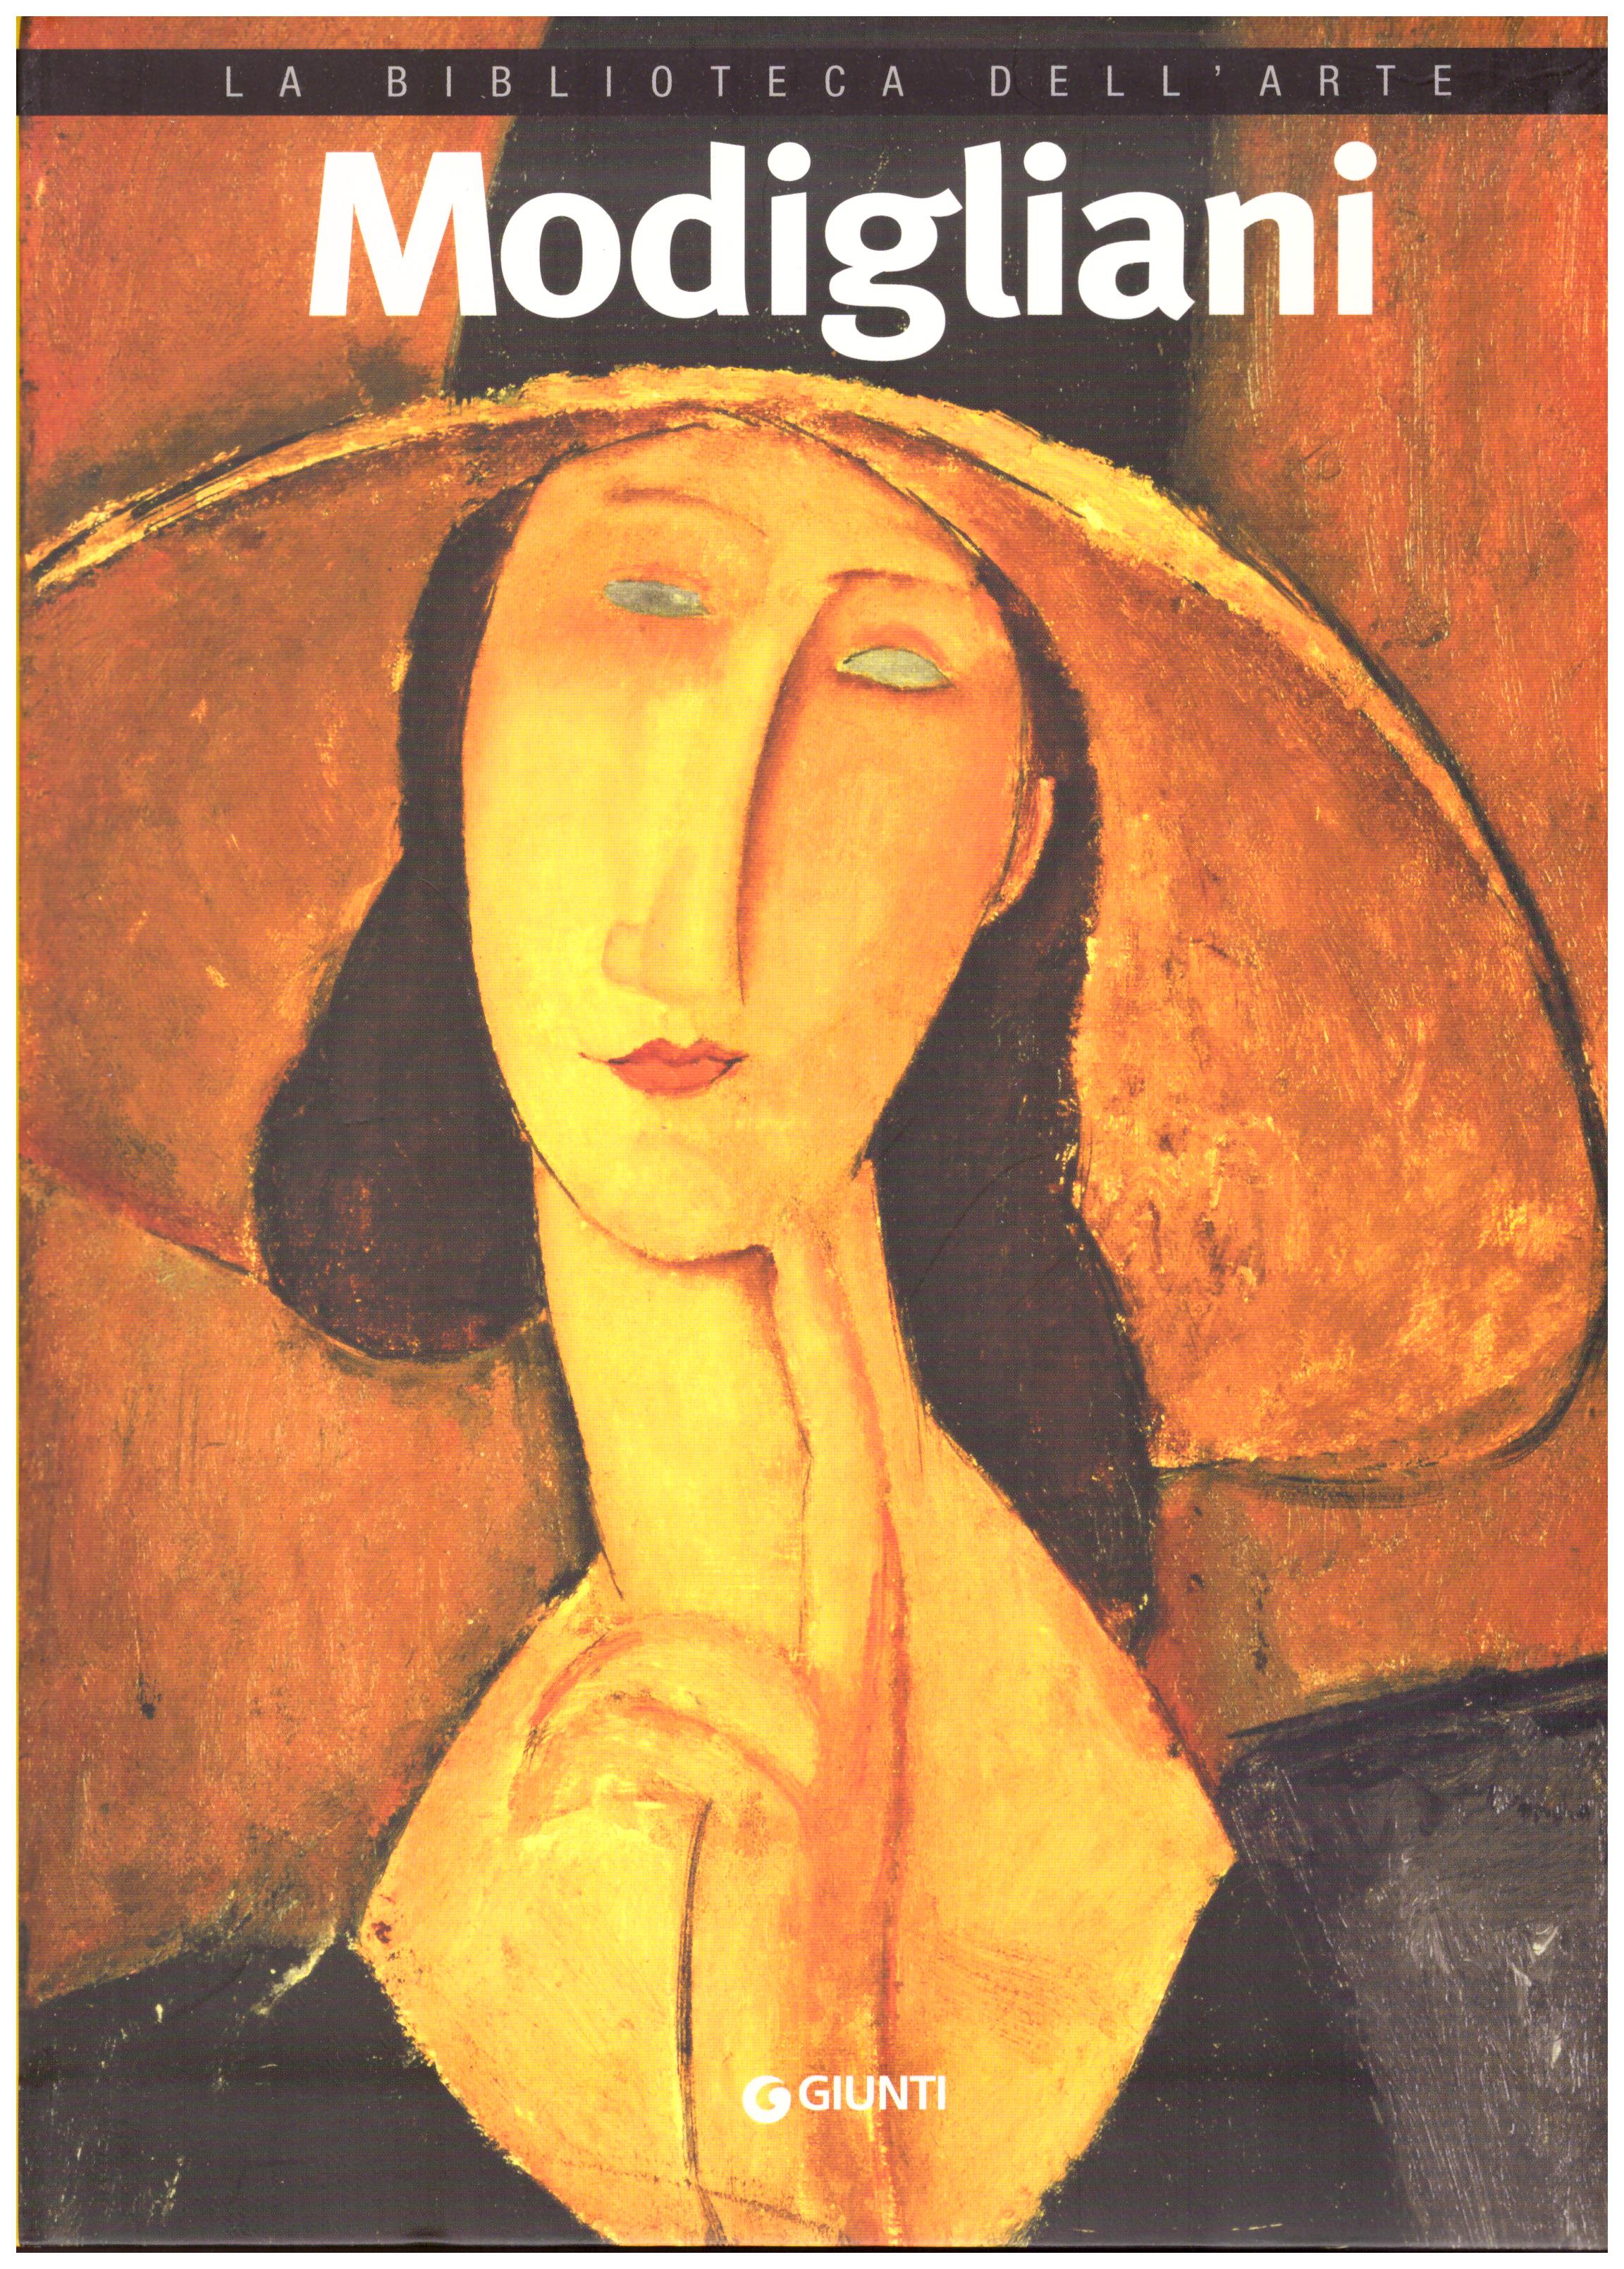 Titolo: La biblioteca dell'arte, Modigliani   Autore: AA.VV.     Editore: Giunti